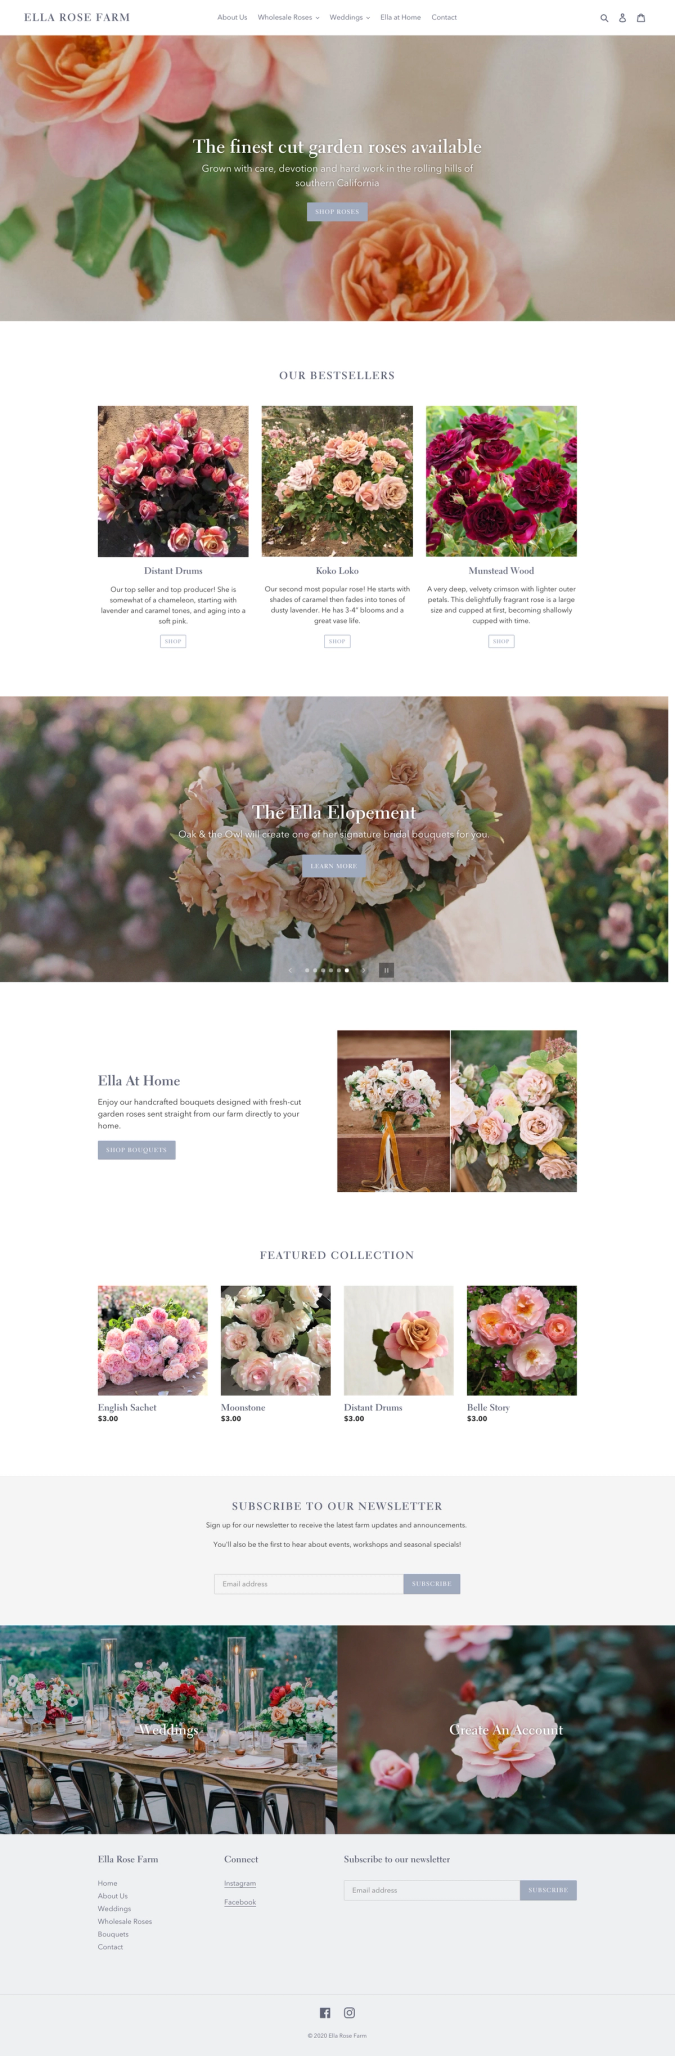 ella rose farm homepage